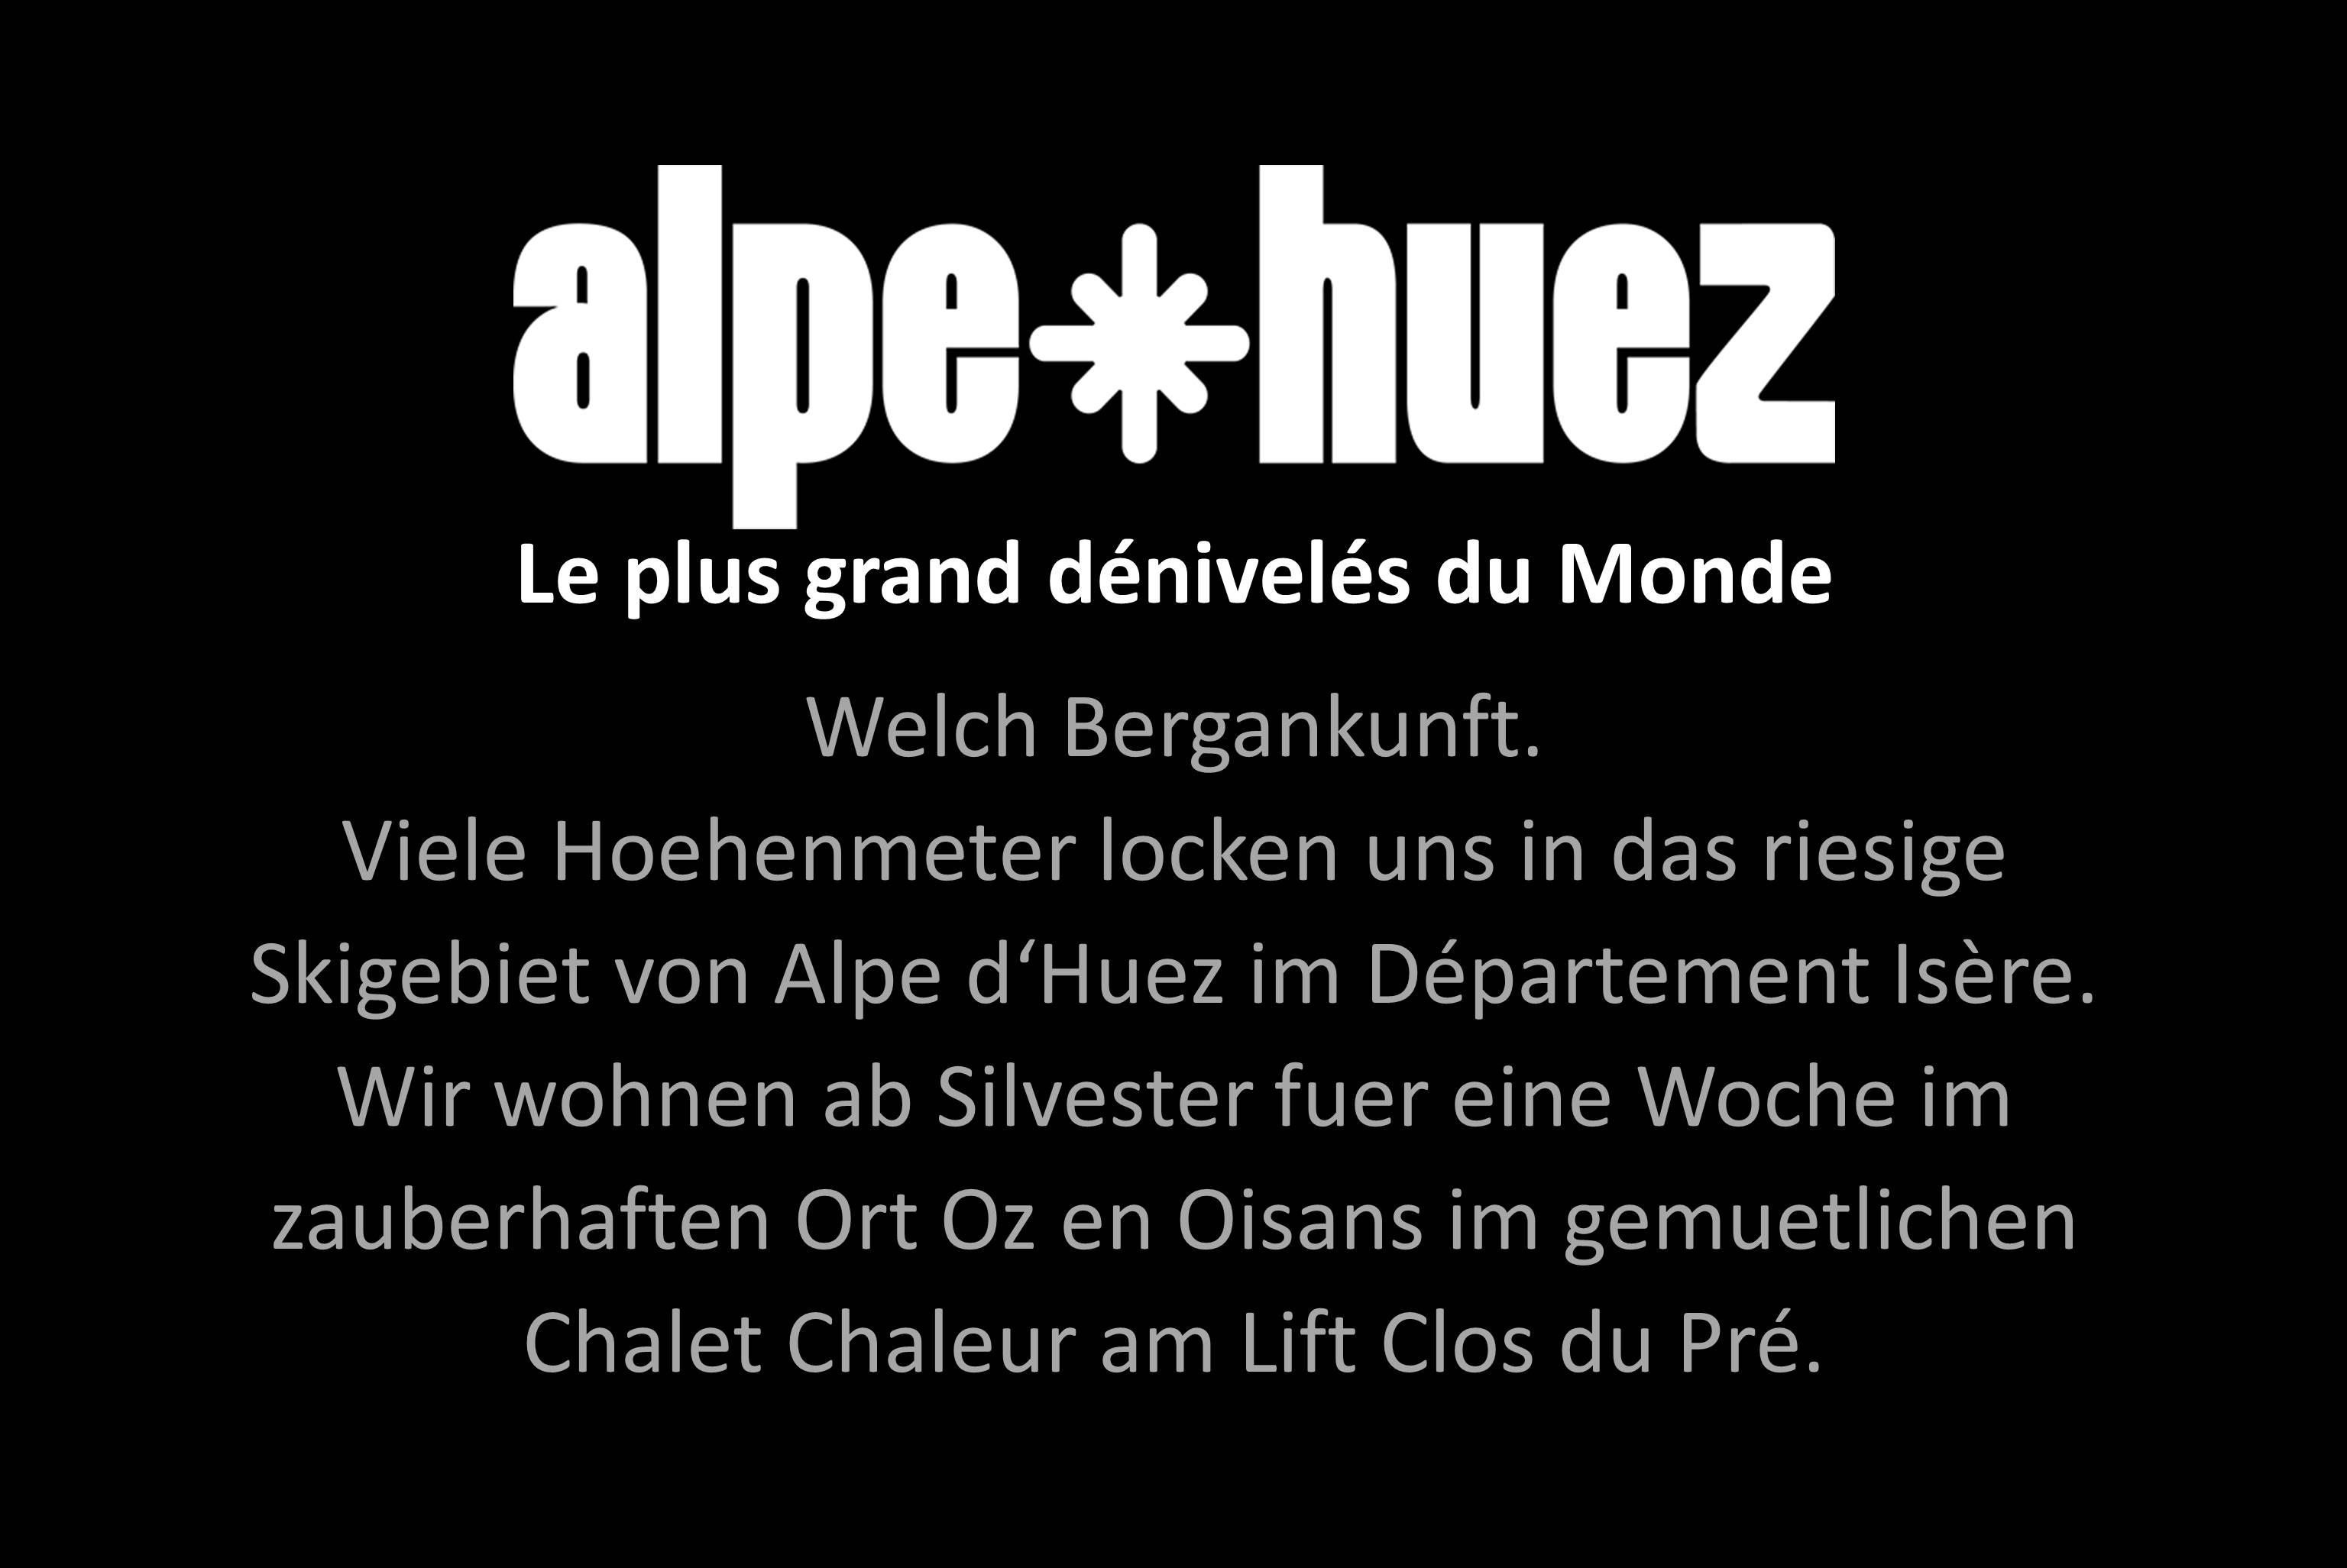 Alpe d'Huez/ Oz en Oisans 2o22/ 23